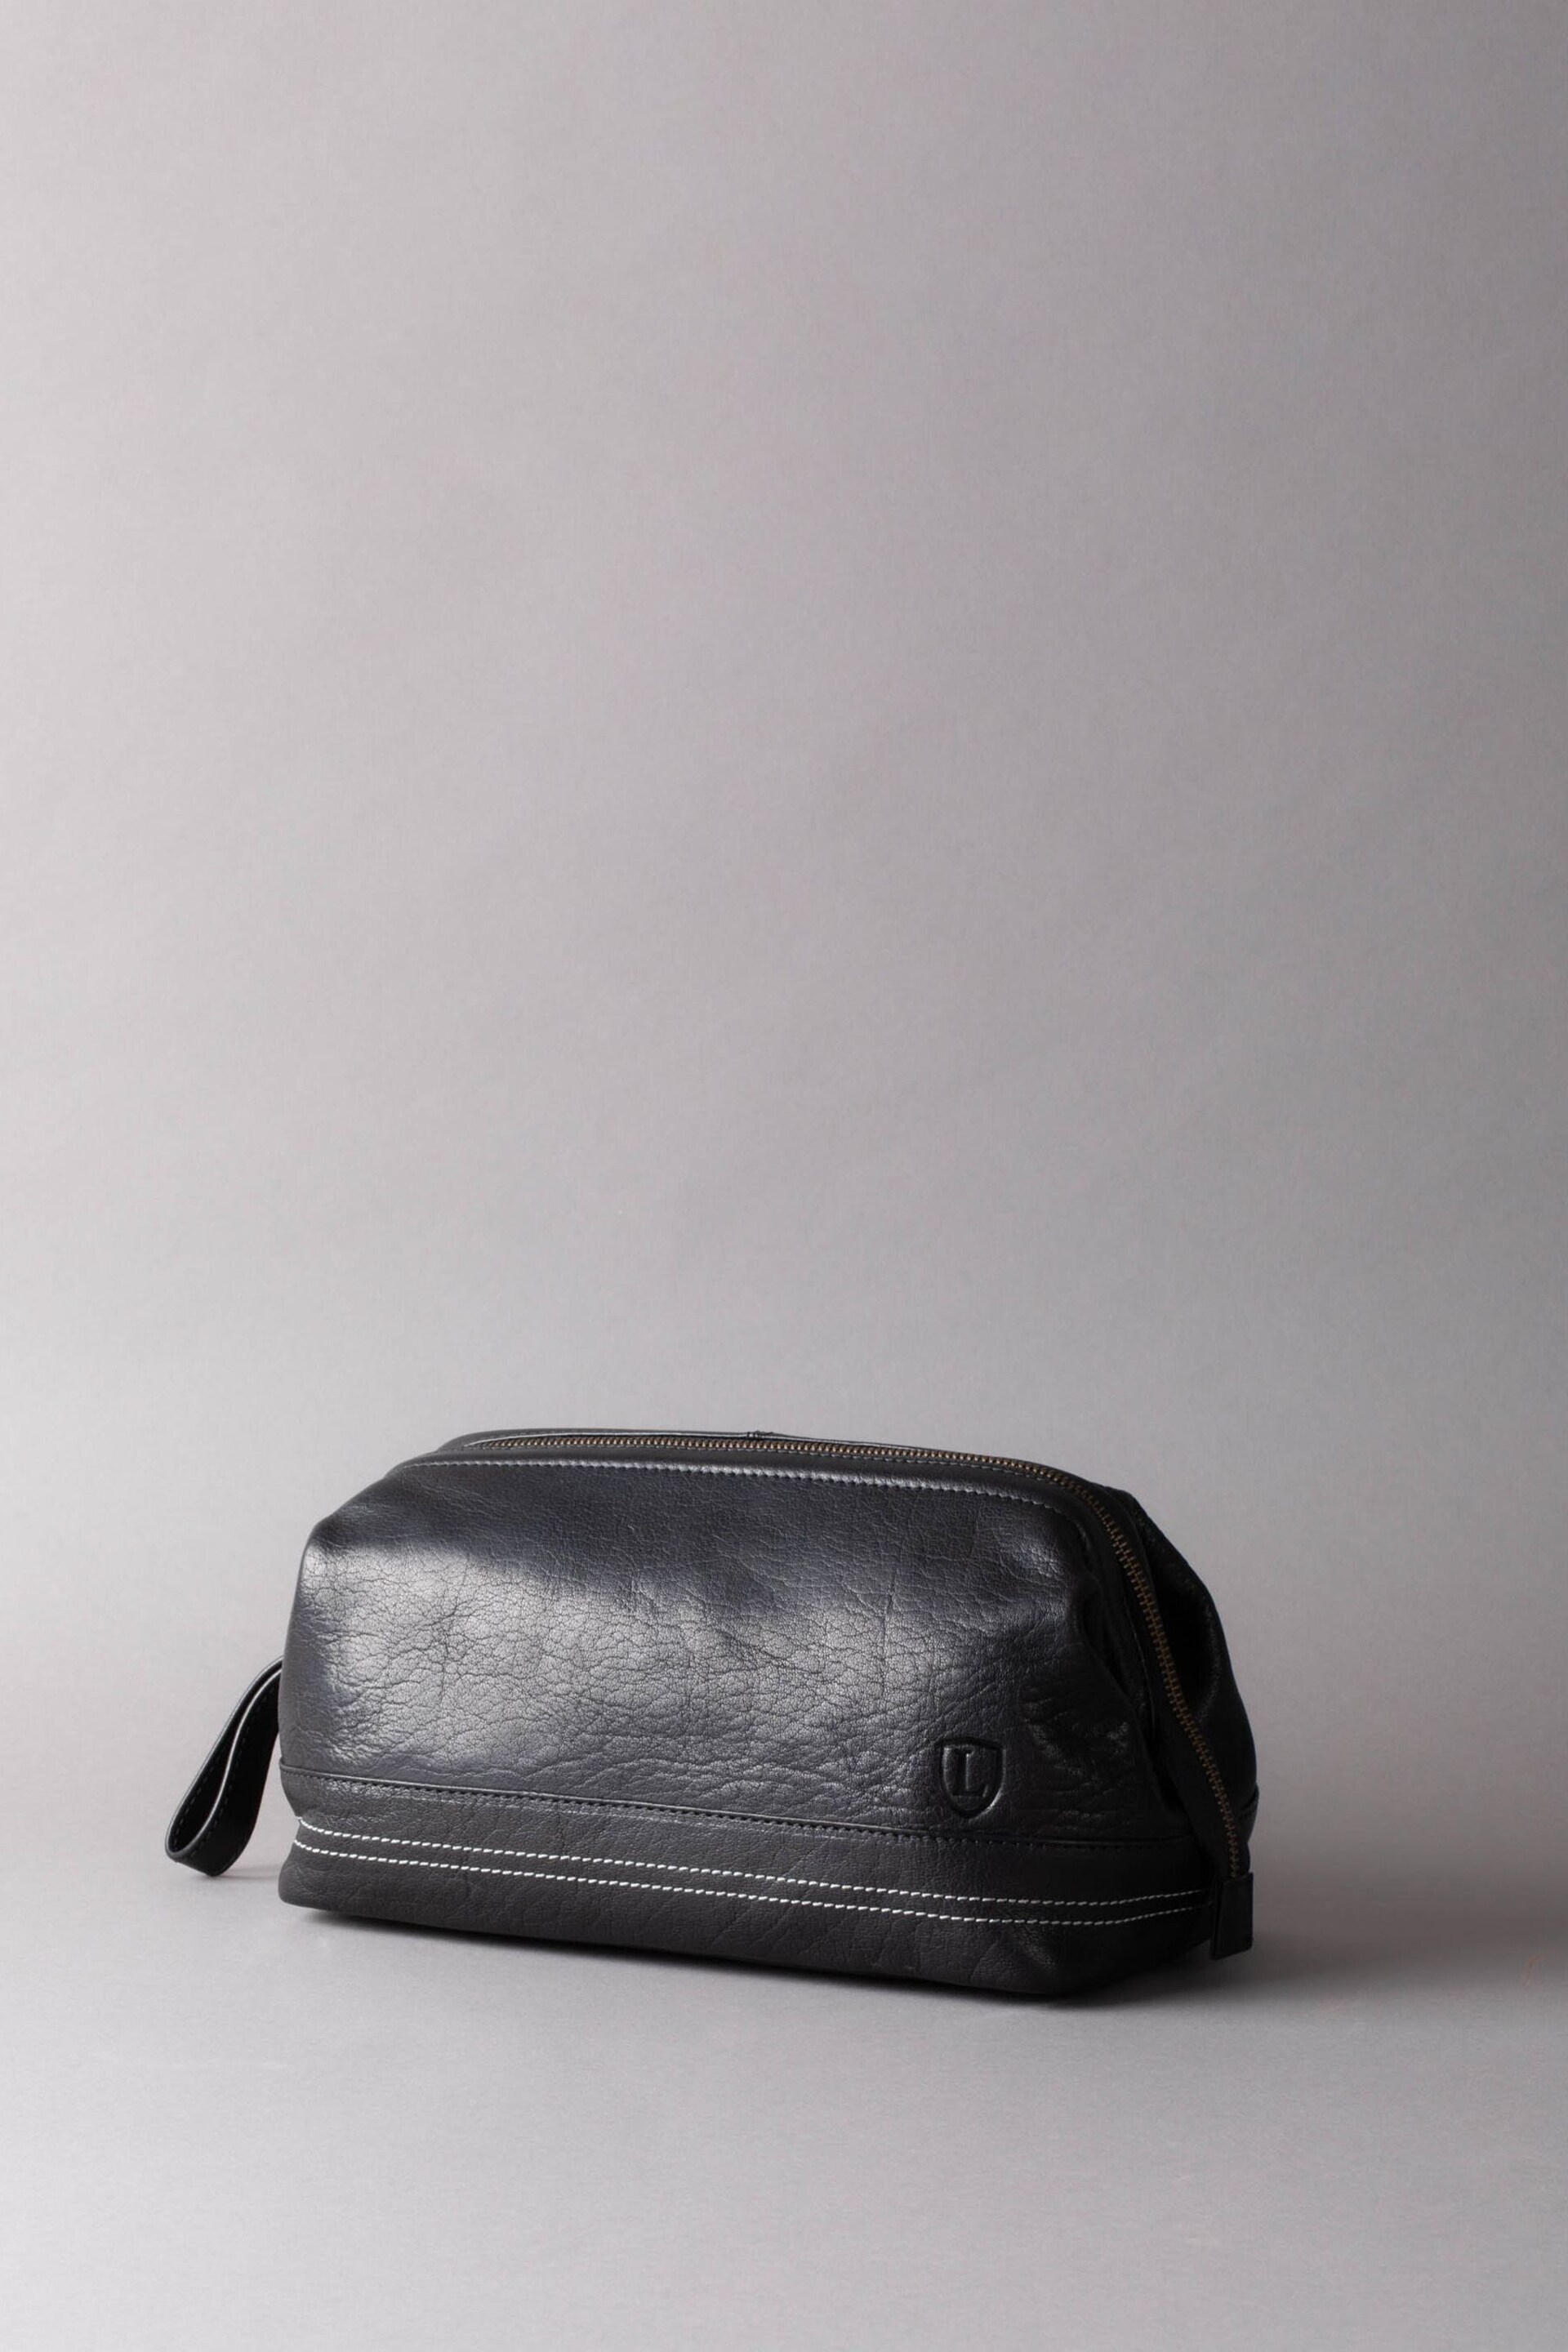 Lakeland Leather Keswick Leather Washbag - Image 1 of 5